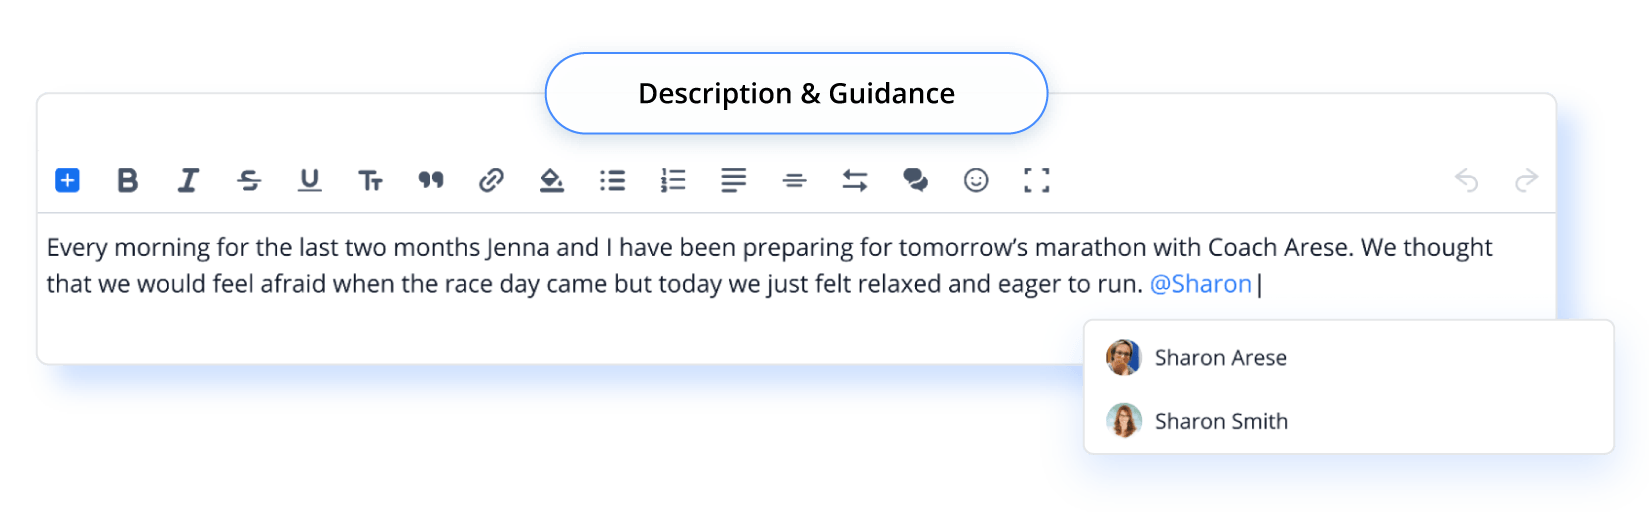 Description Guidance@2x 8